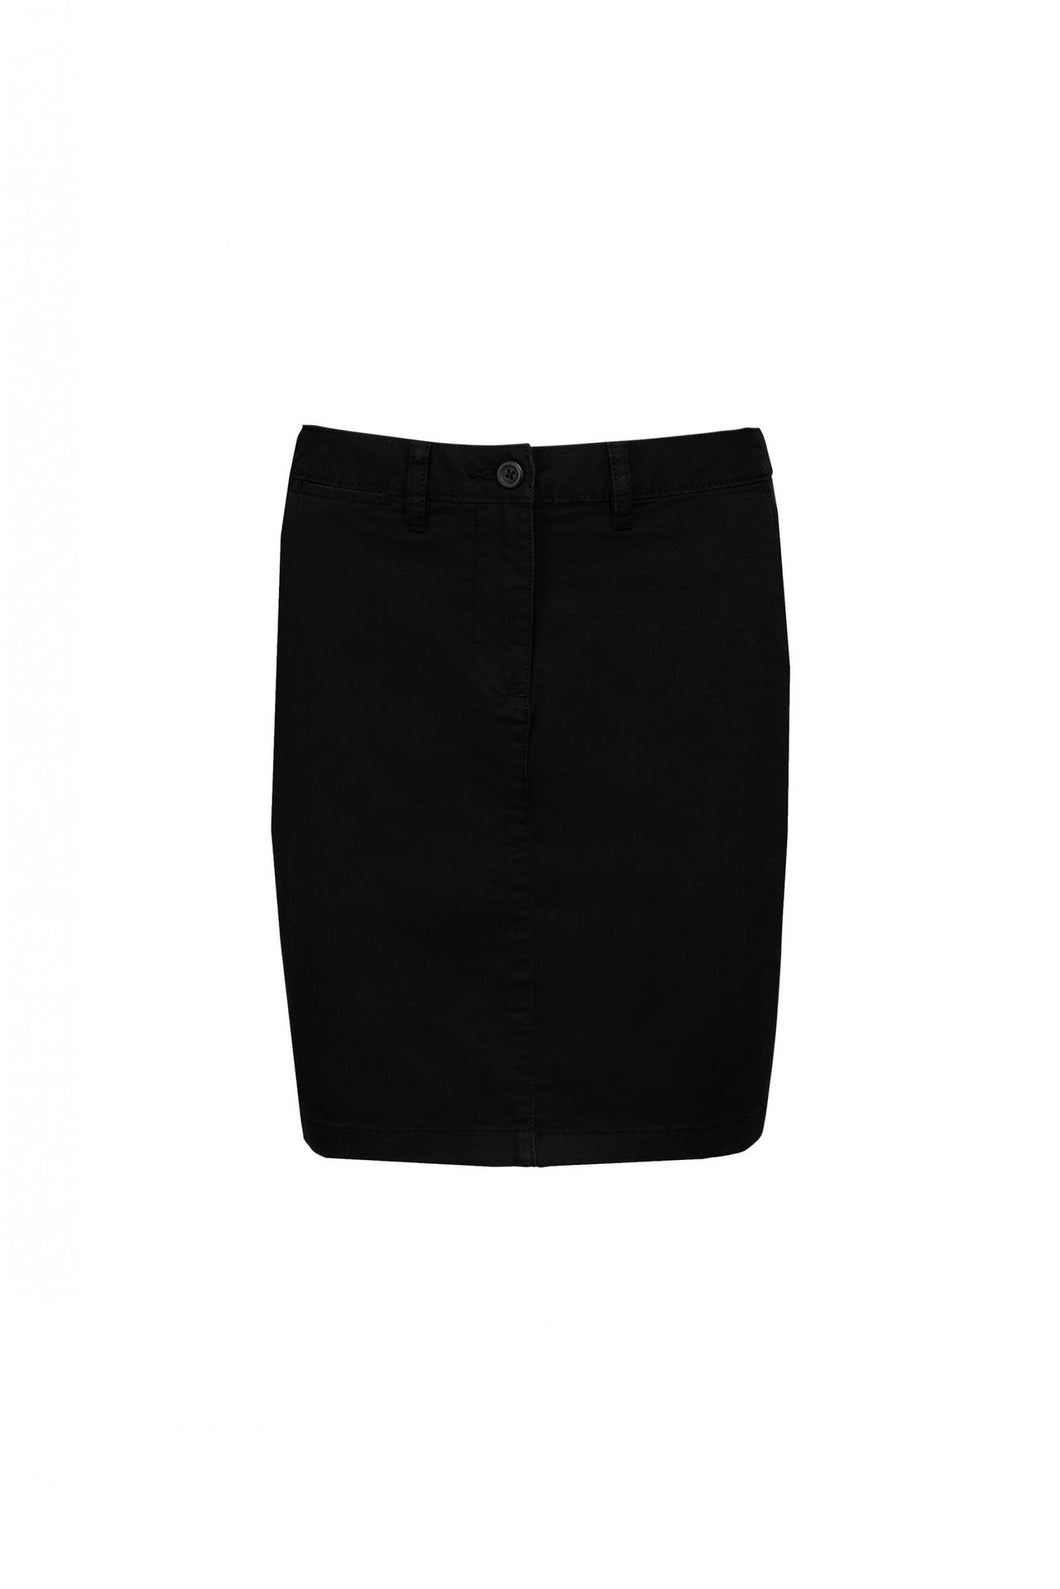 Kariban Ladies Chino Skirt